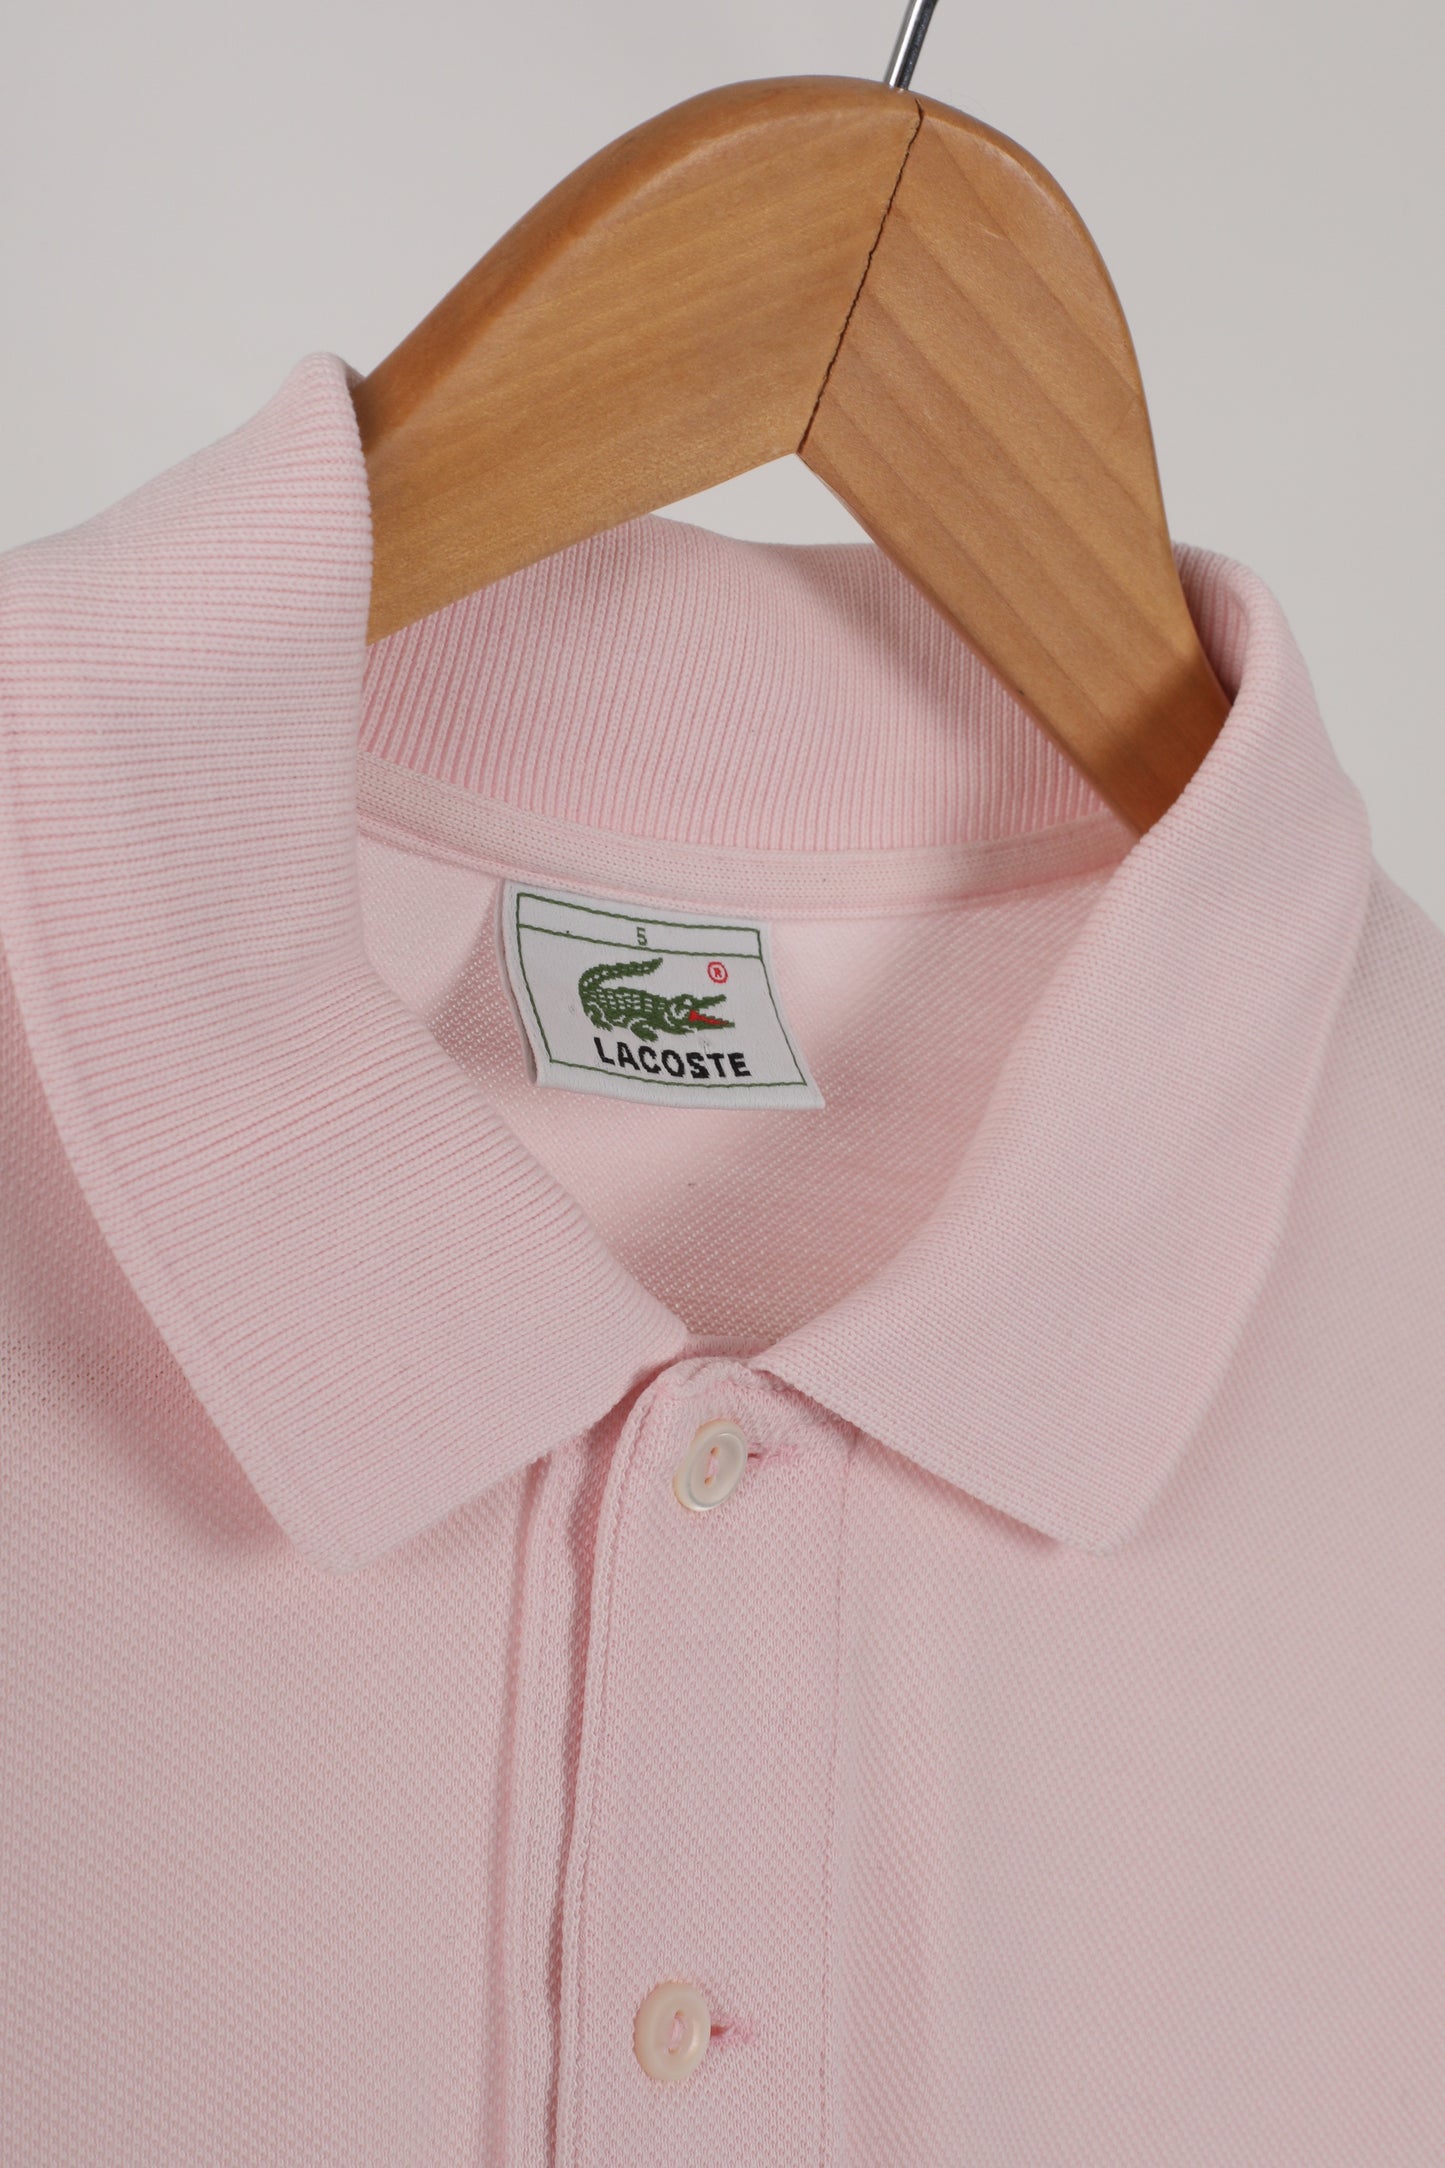 Lacoste pique cotton polo shirt (6)